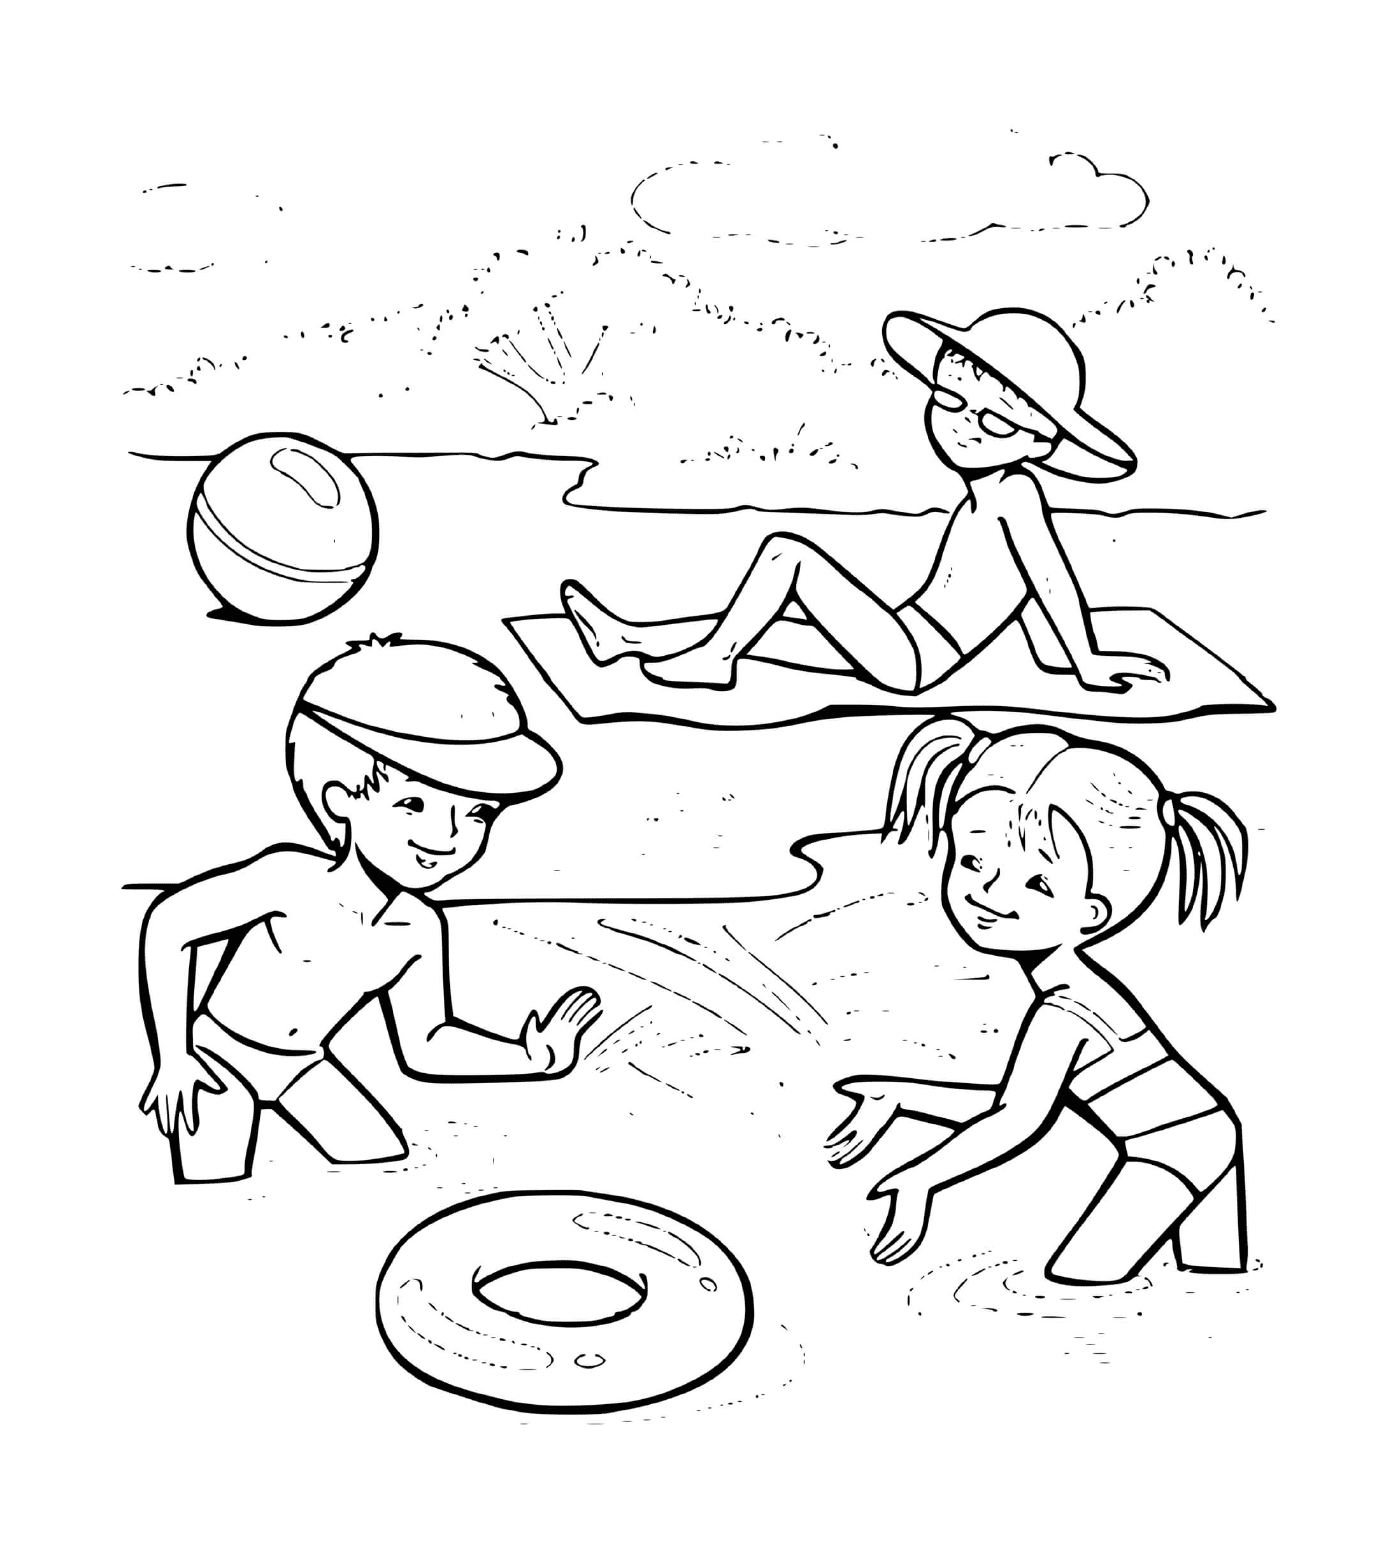  Bambini che giocano sulla spiaggia 